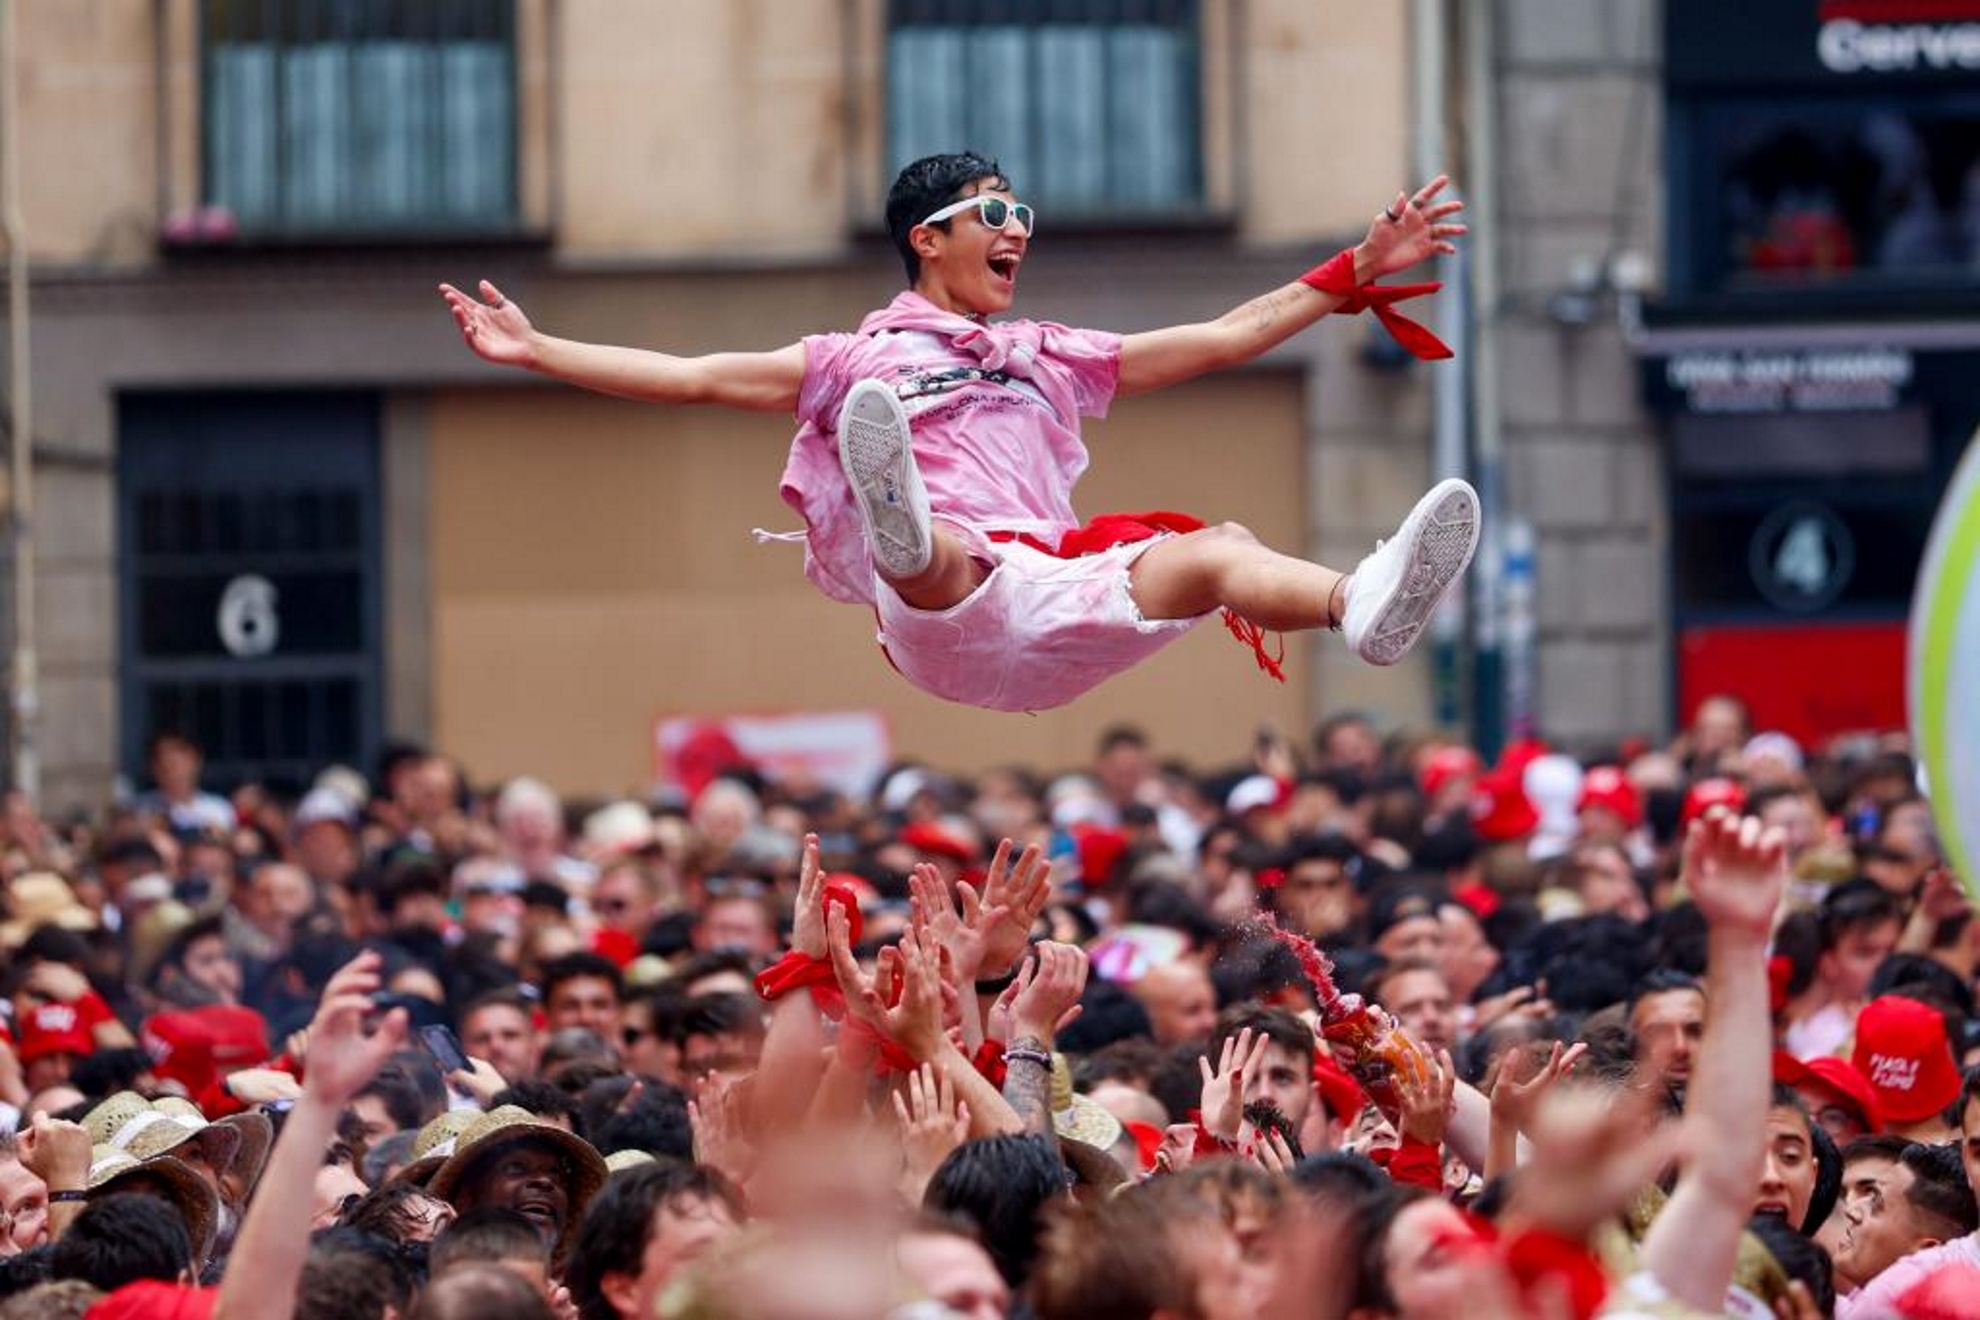 Personas de todas las edades disfrutan de la fiesta en Pamplona.